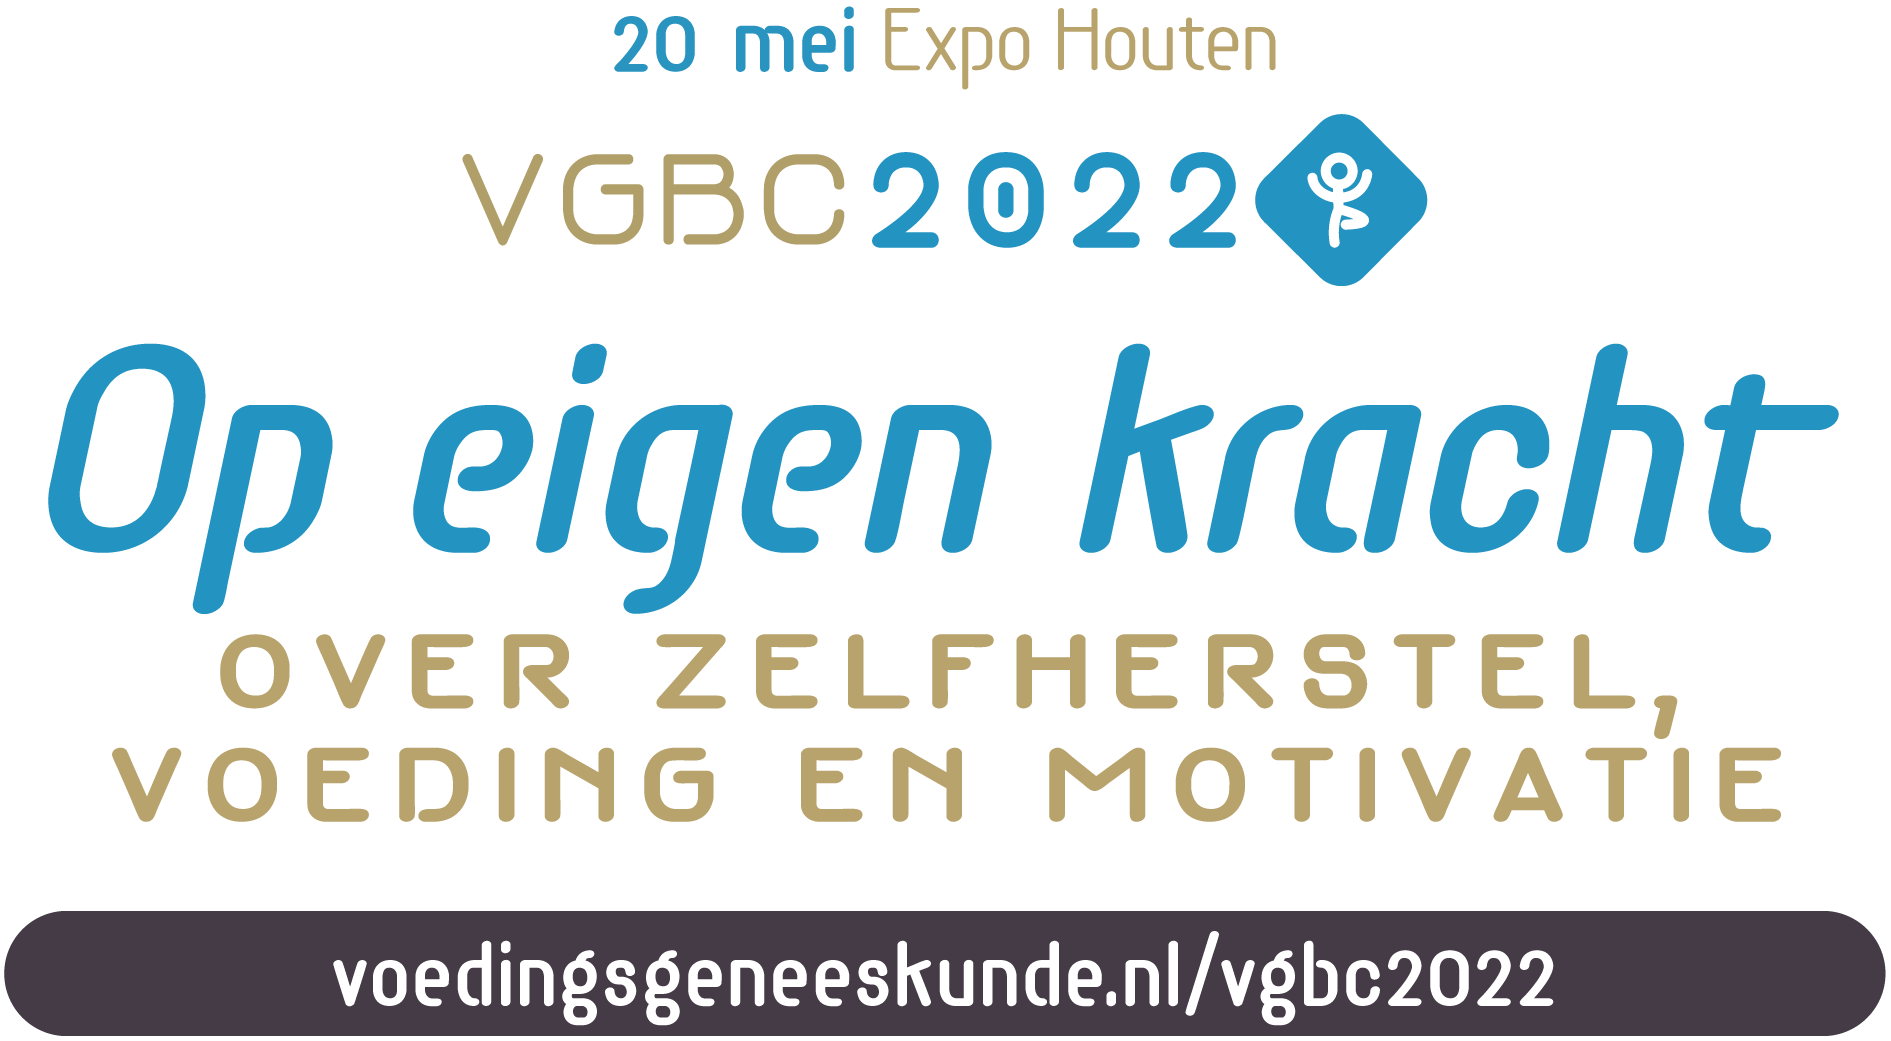 VGBC2022 congres van voedingsgeneeskunde - Op eigen kracht